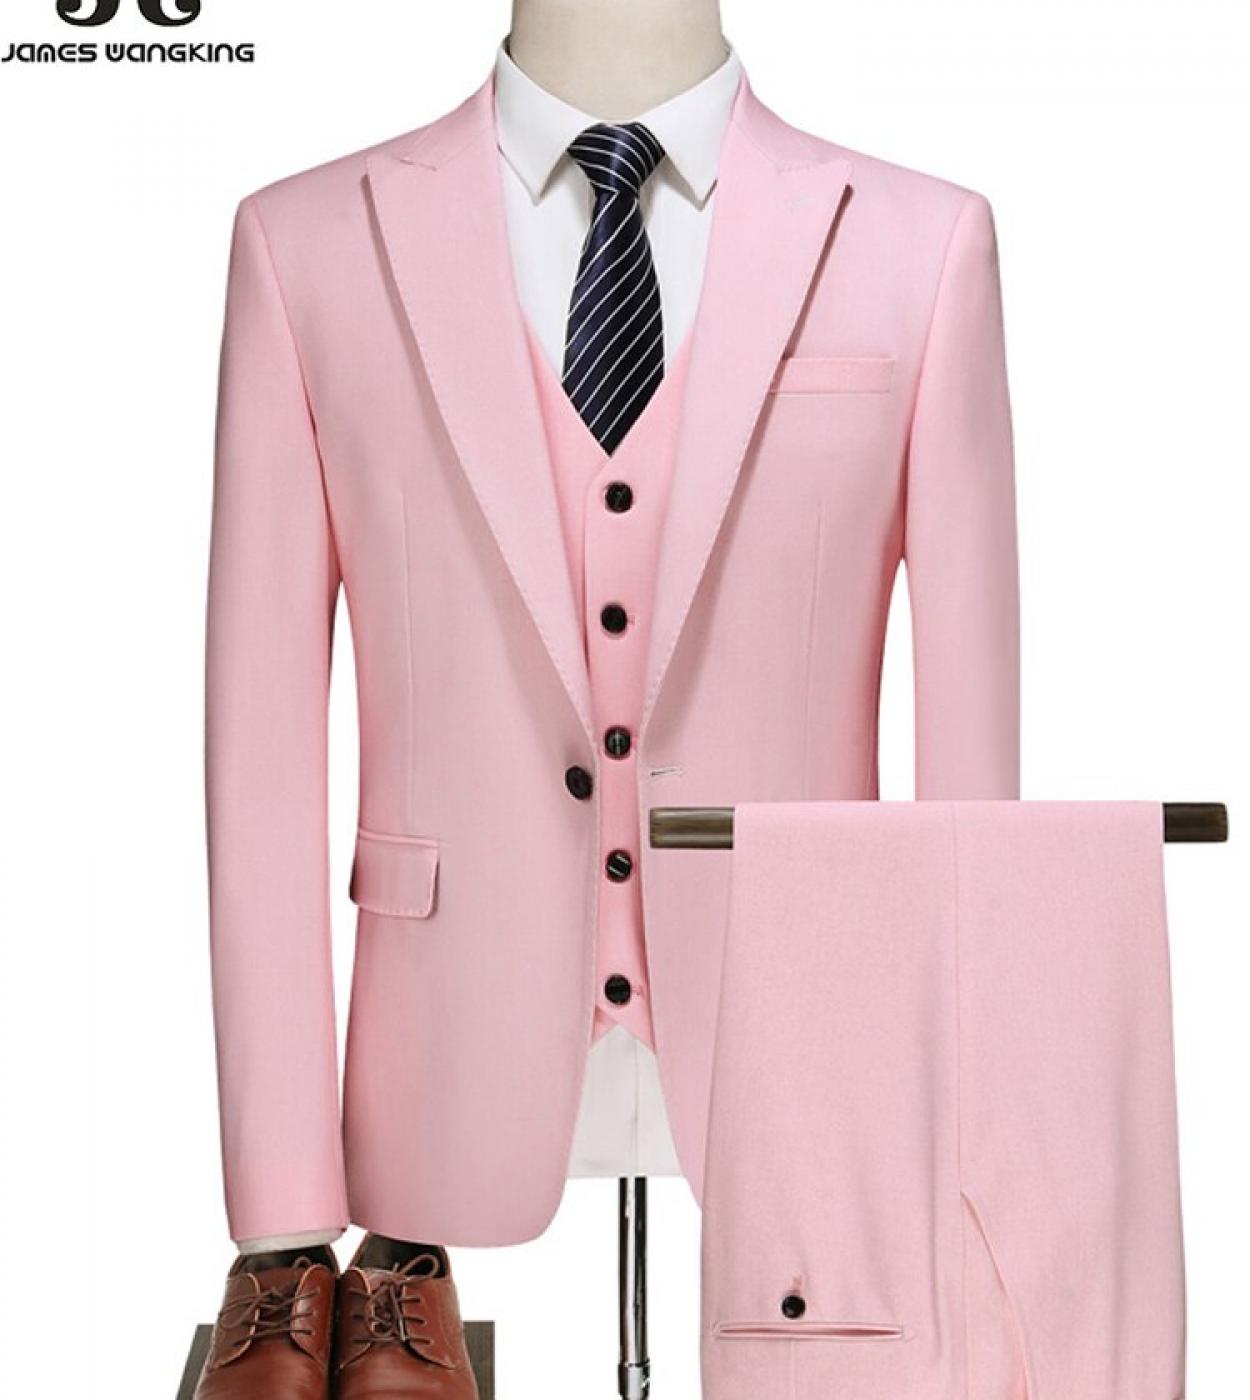  Blazer  Vest  Pants  Boutique Fashion Mens Casual Business Suit High End Social Formal Suit 3pce Set Groom Wedding